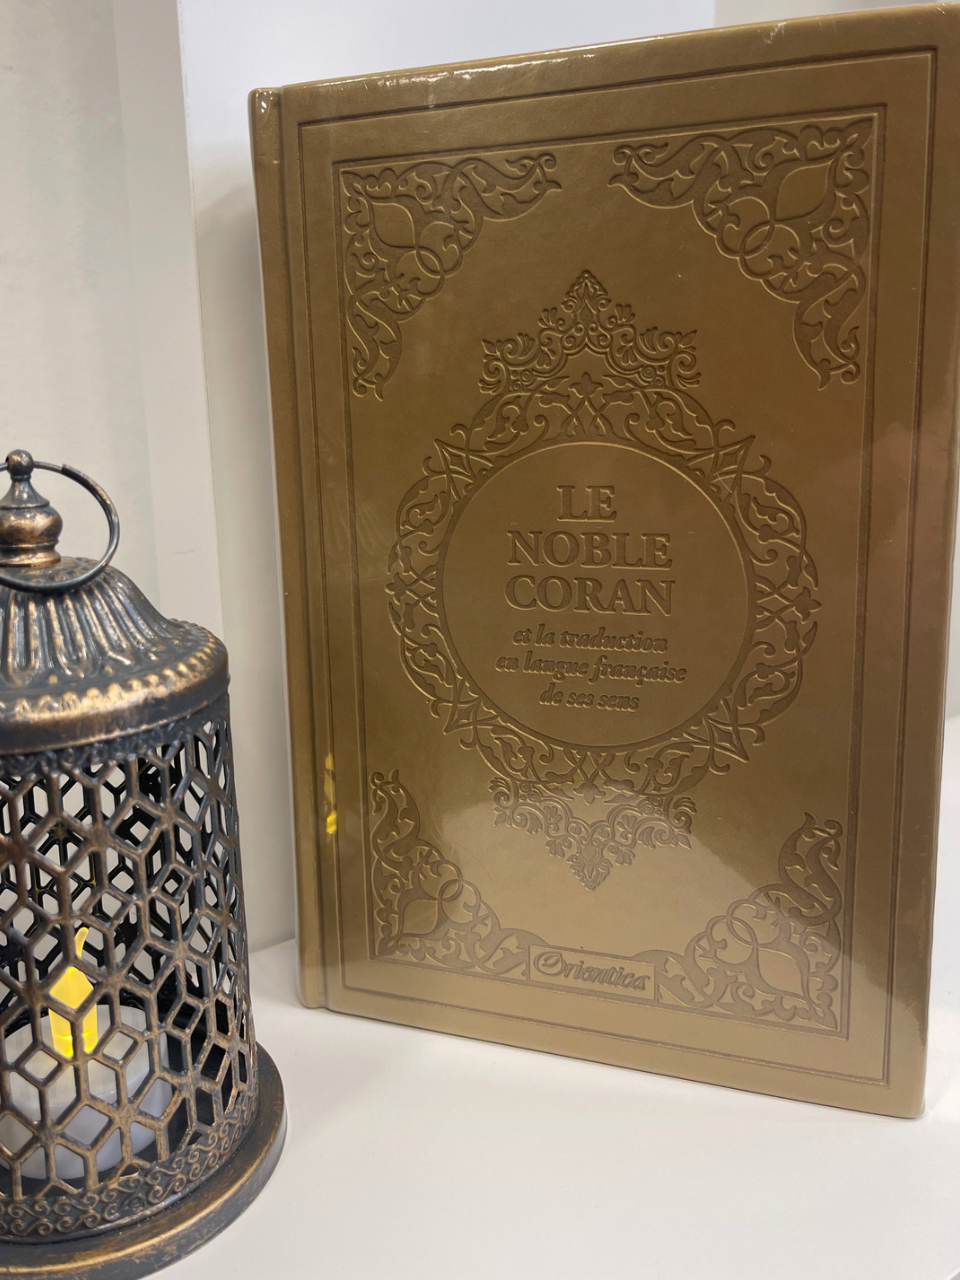 Le Noble Coran et la traduction en langue française de ses sens (bilingue français/arabe) - Edition de luxe couverture cartonnée en cuir